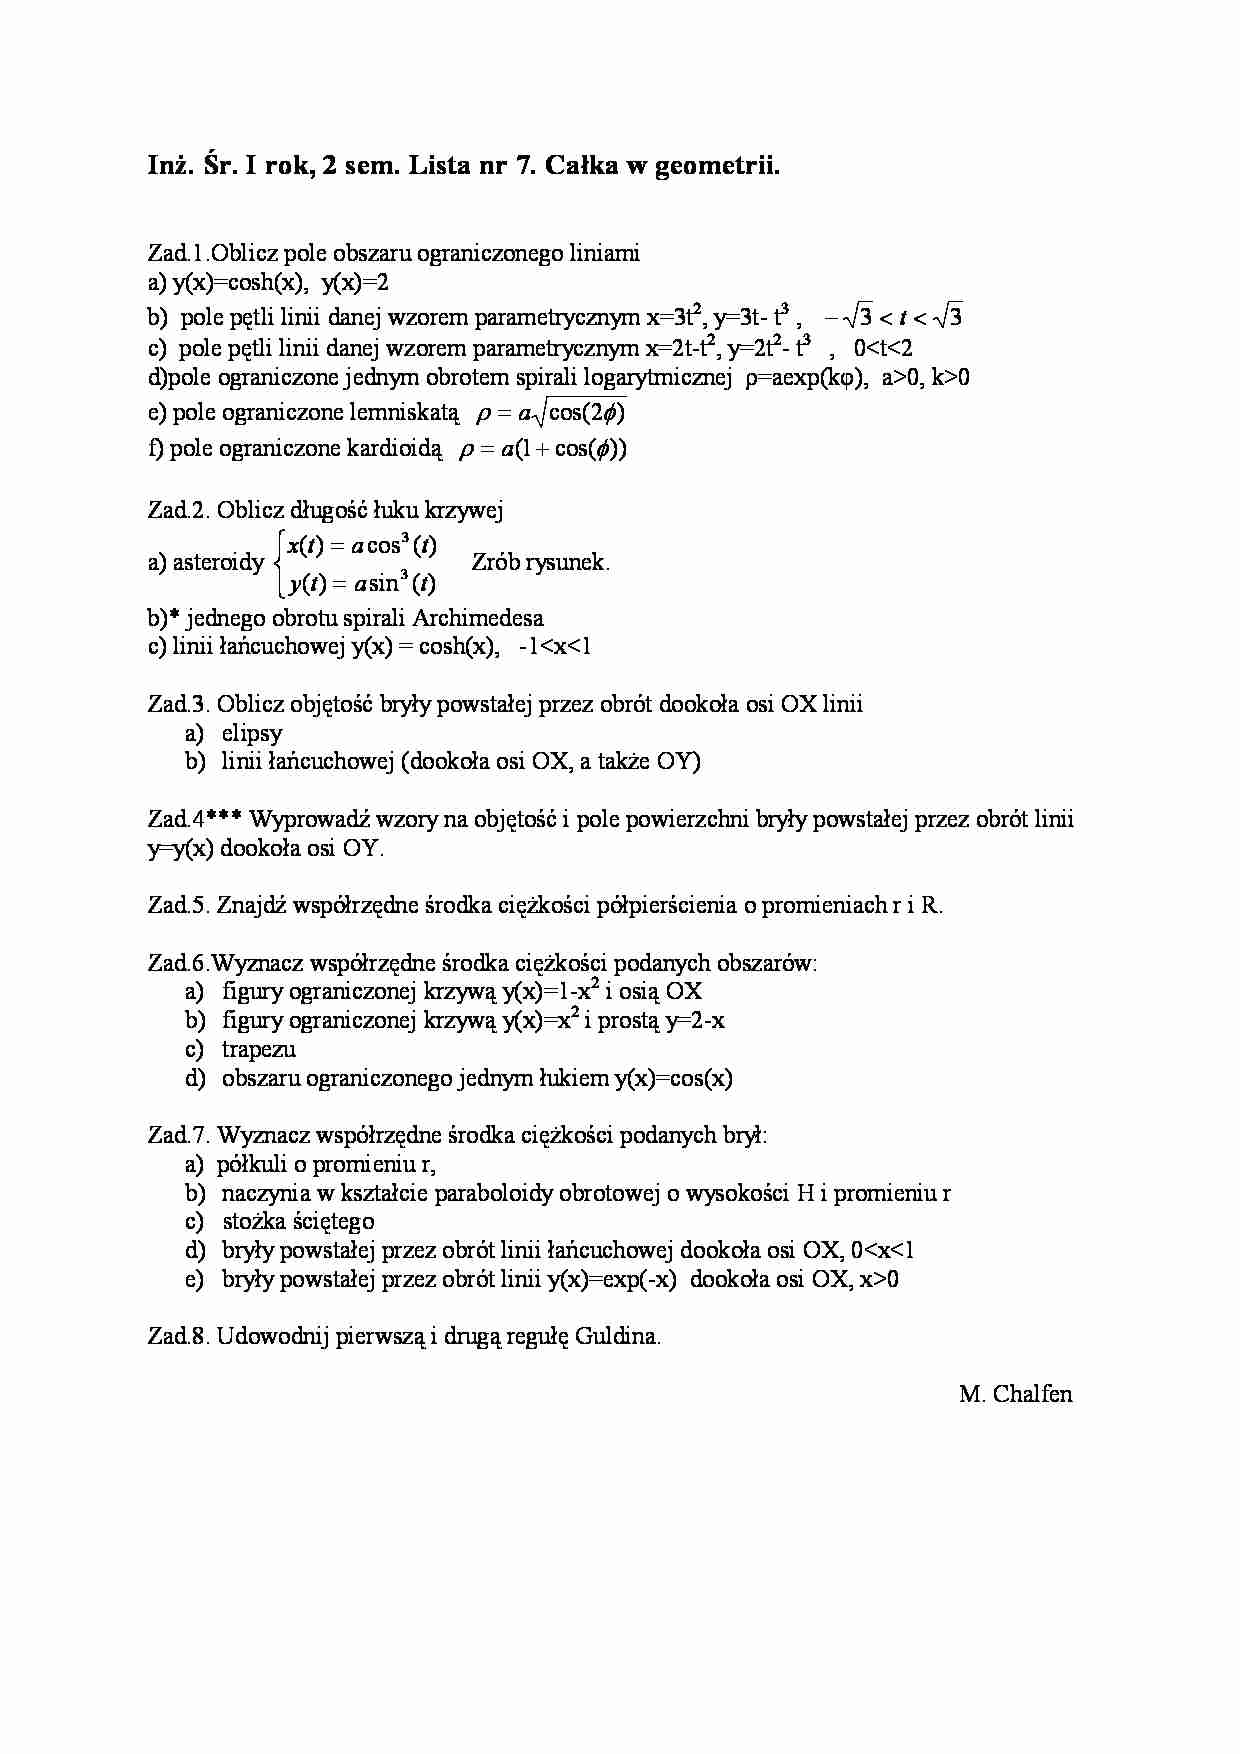 Całka w geometrii-zadania - strona 1